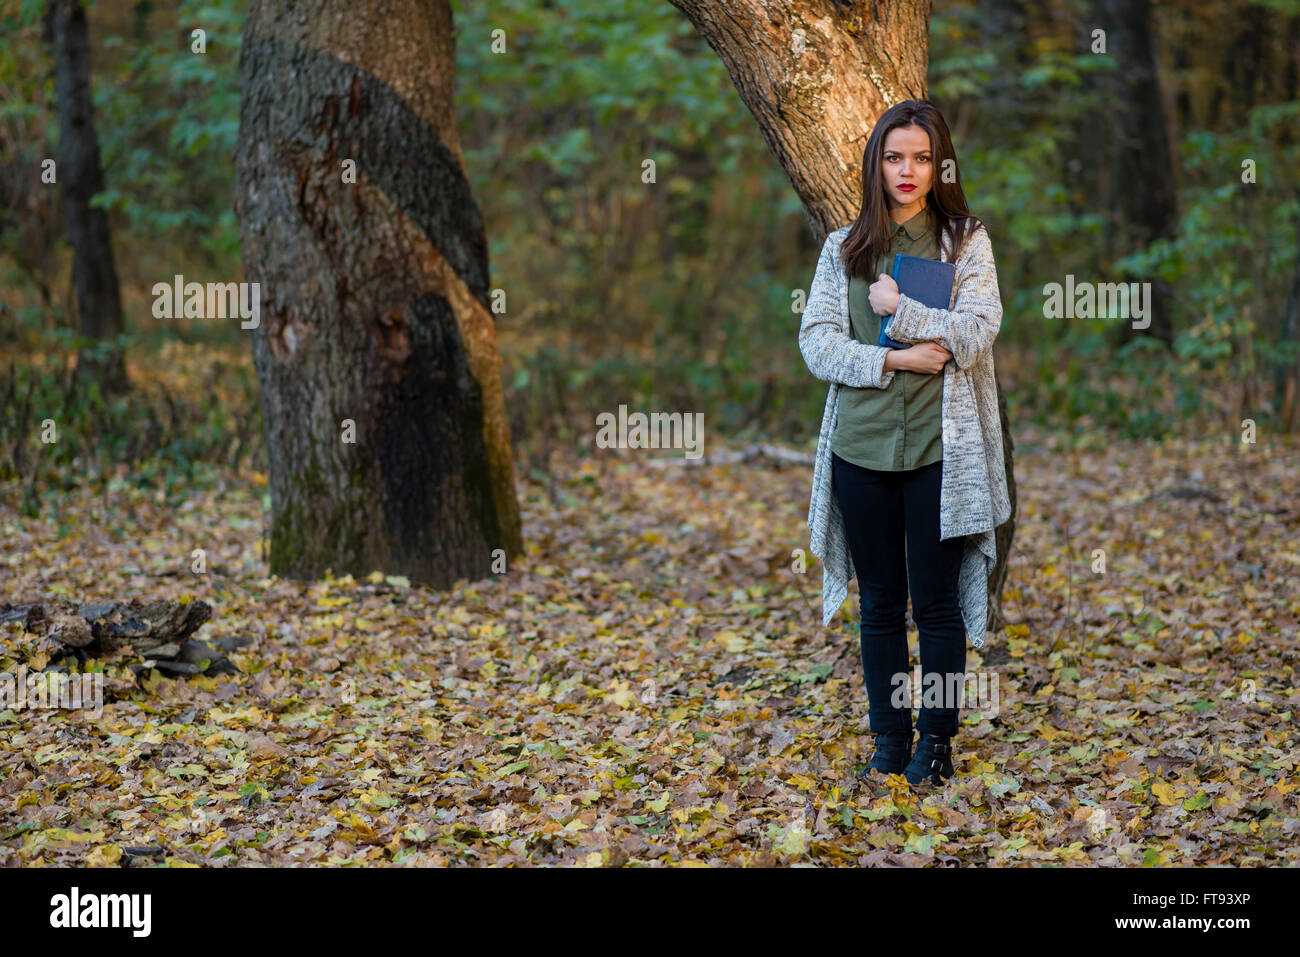 Angst, durch das Lesen von Märchen. Eine Teenager-Mädchen hält ein Buch in einem Abend-Wald mit zwei Eichen im Hintergrund. Stockfoto